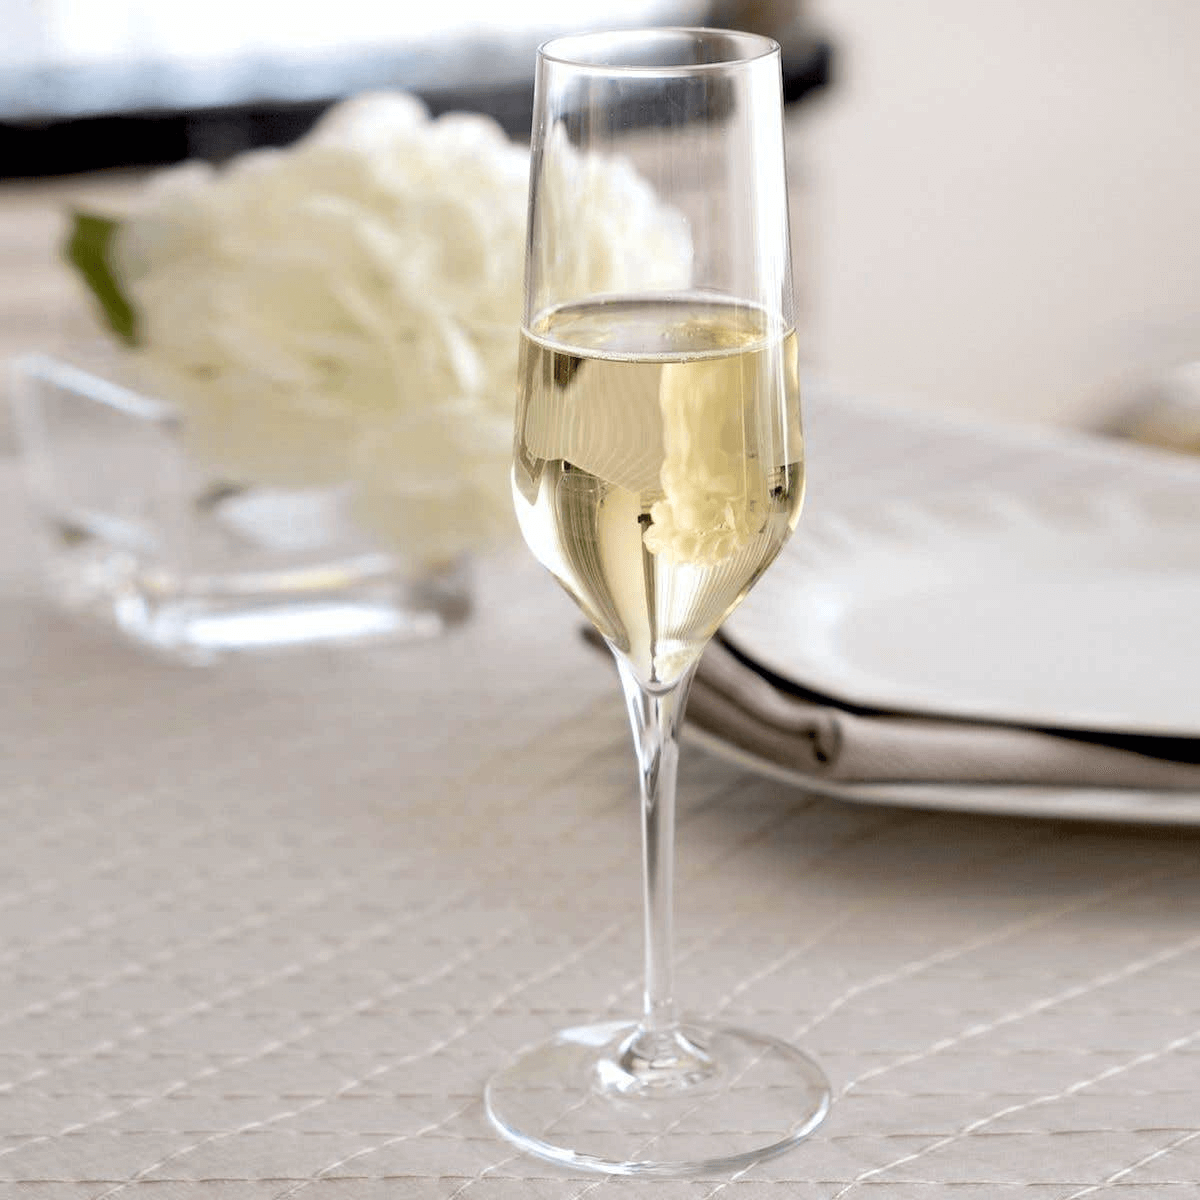 Ly rượu vang trắng được sử dụng để phục vụ rượu vang trắng vì hình dạng ly được thiết kế để lưu giữ hương hoa tốt hơn